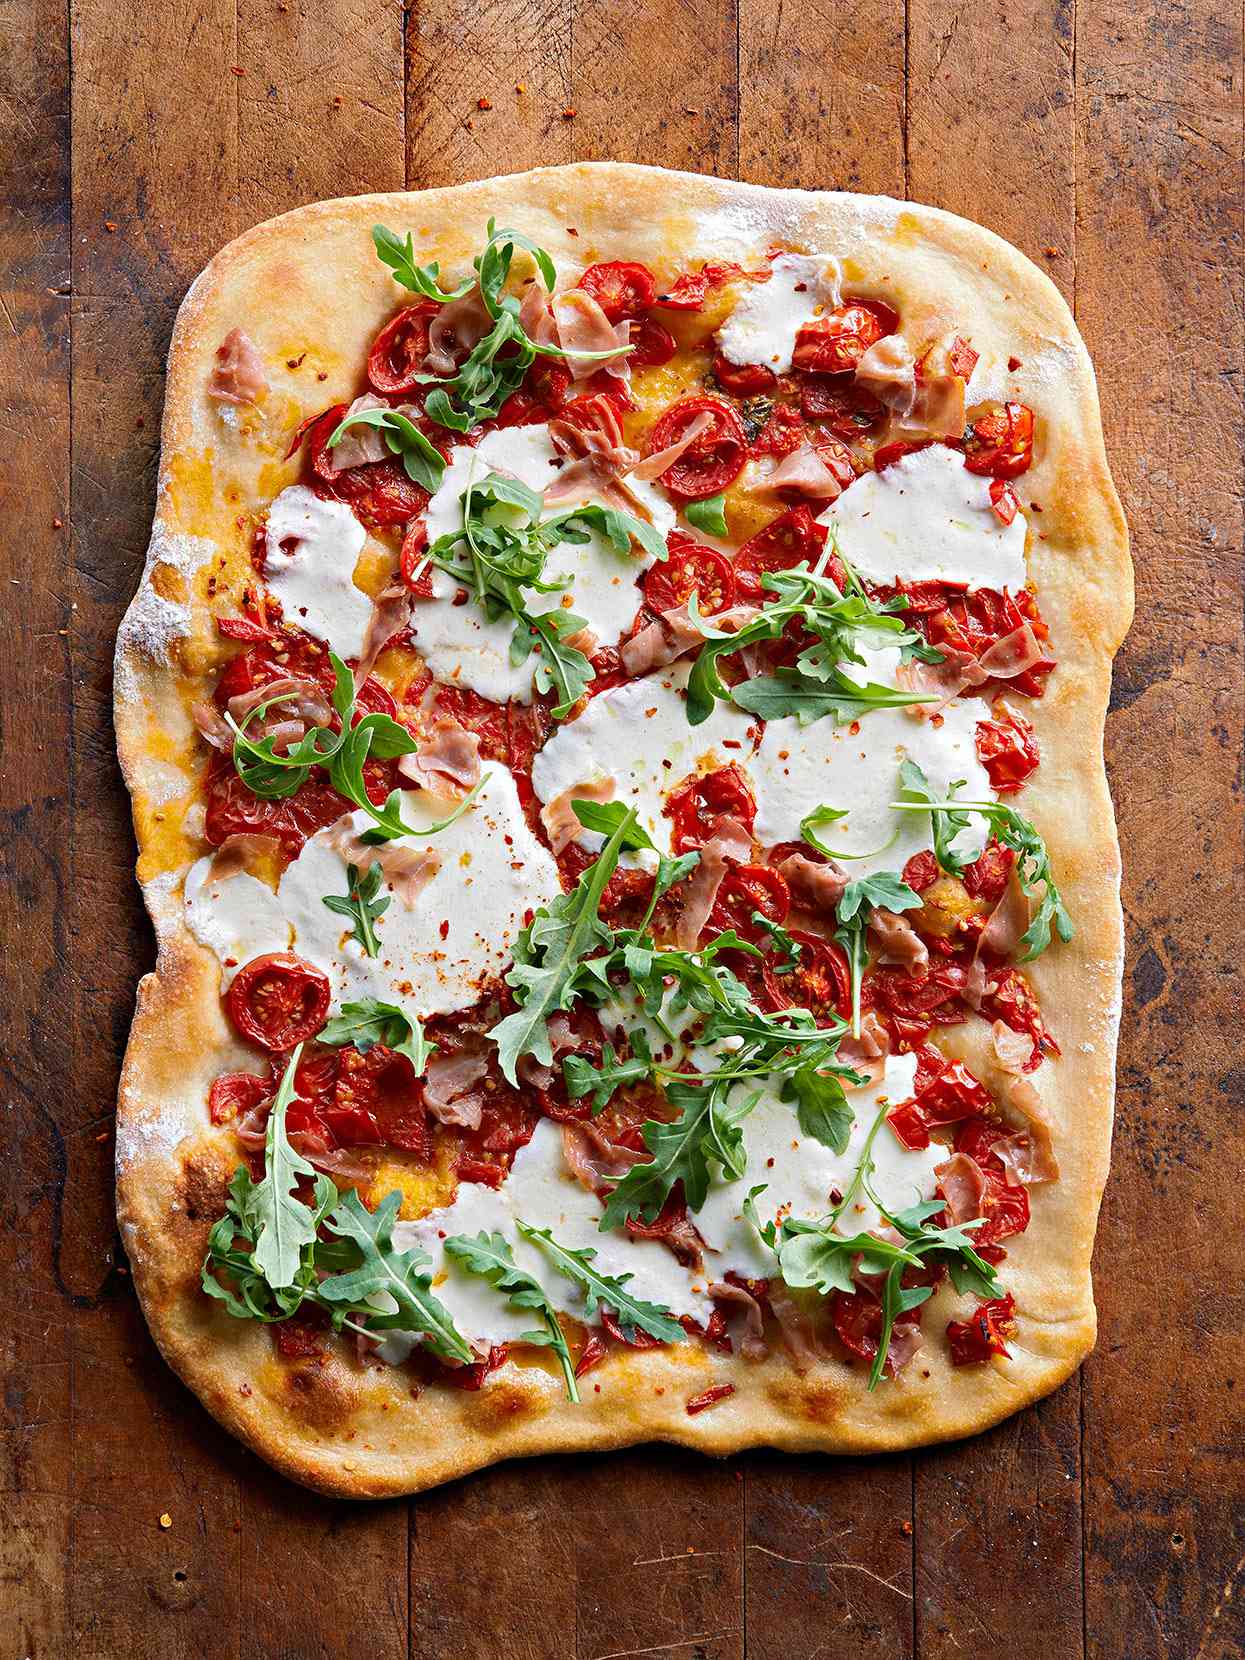 Fresh Tomato Pizza with Oregano and Mozzarella